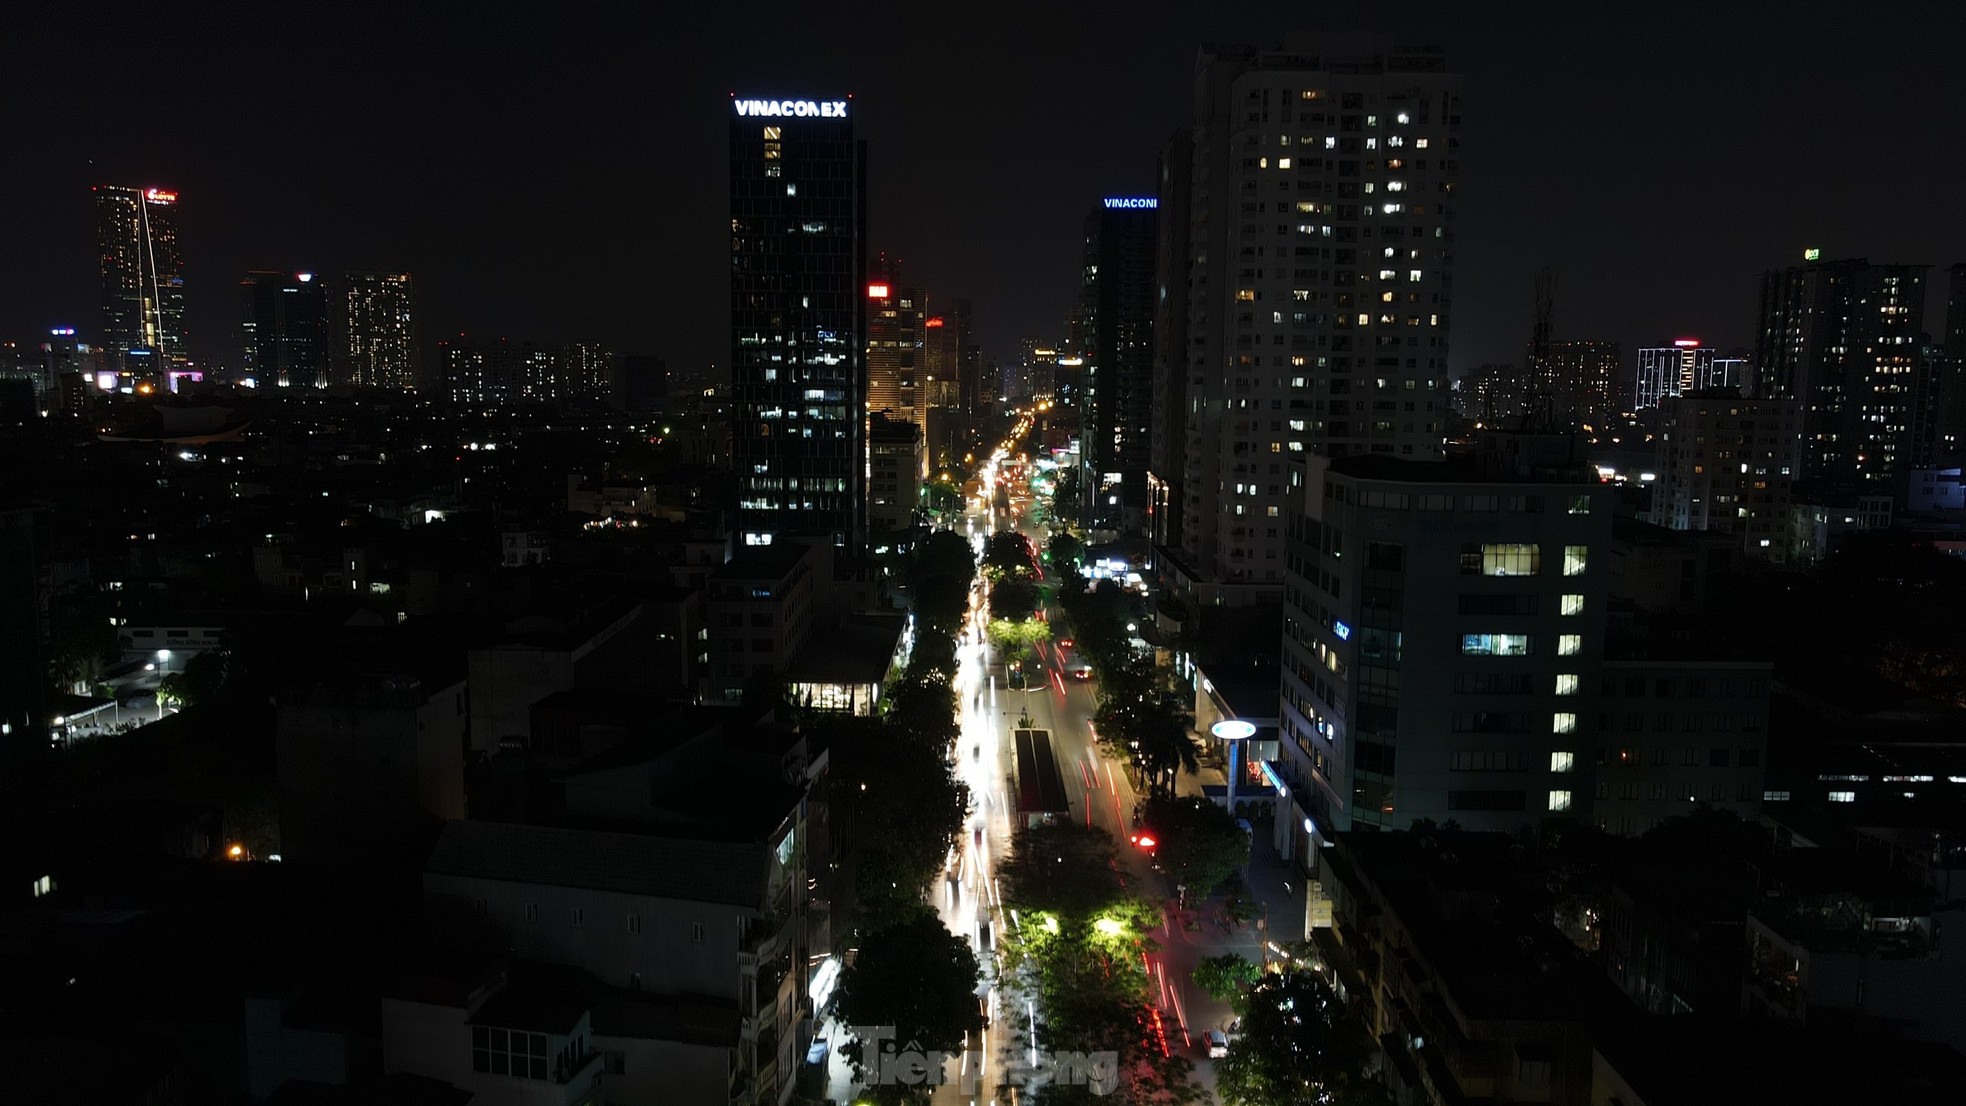 Đường phố Hà Nội bỗng tối om vì phải cắt giảm điện - Ảnh 1.